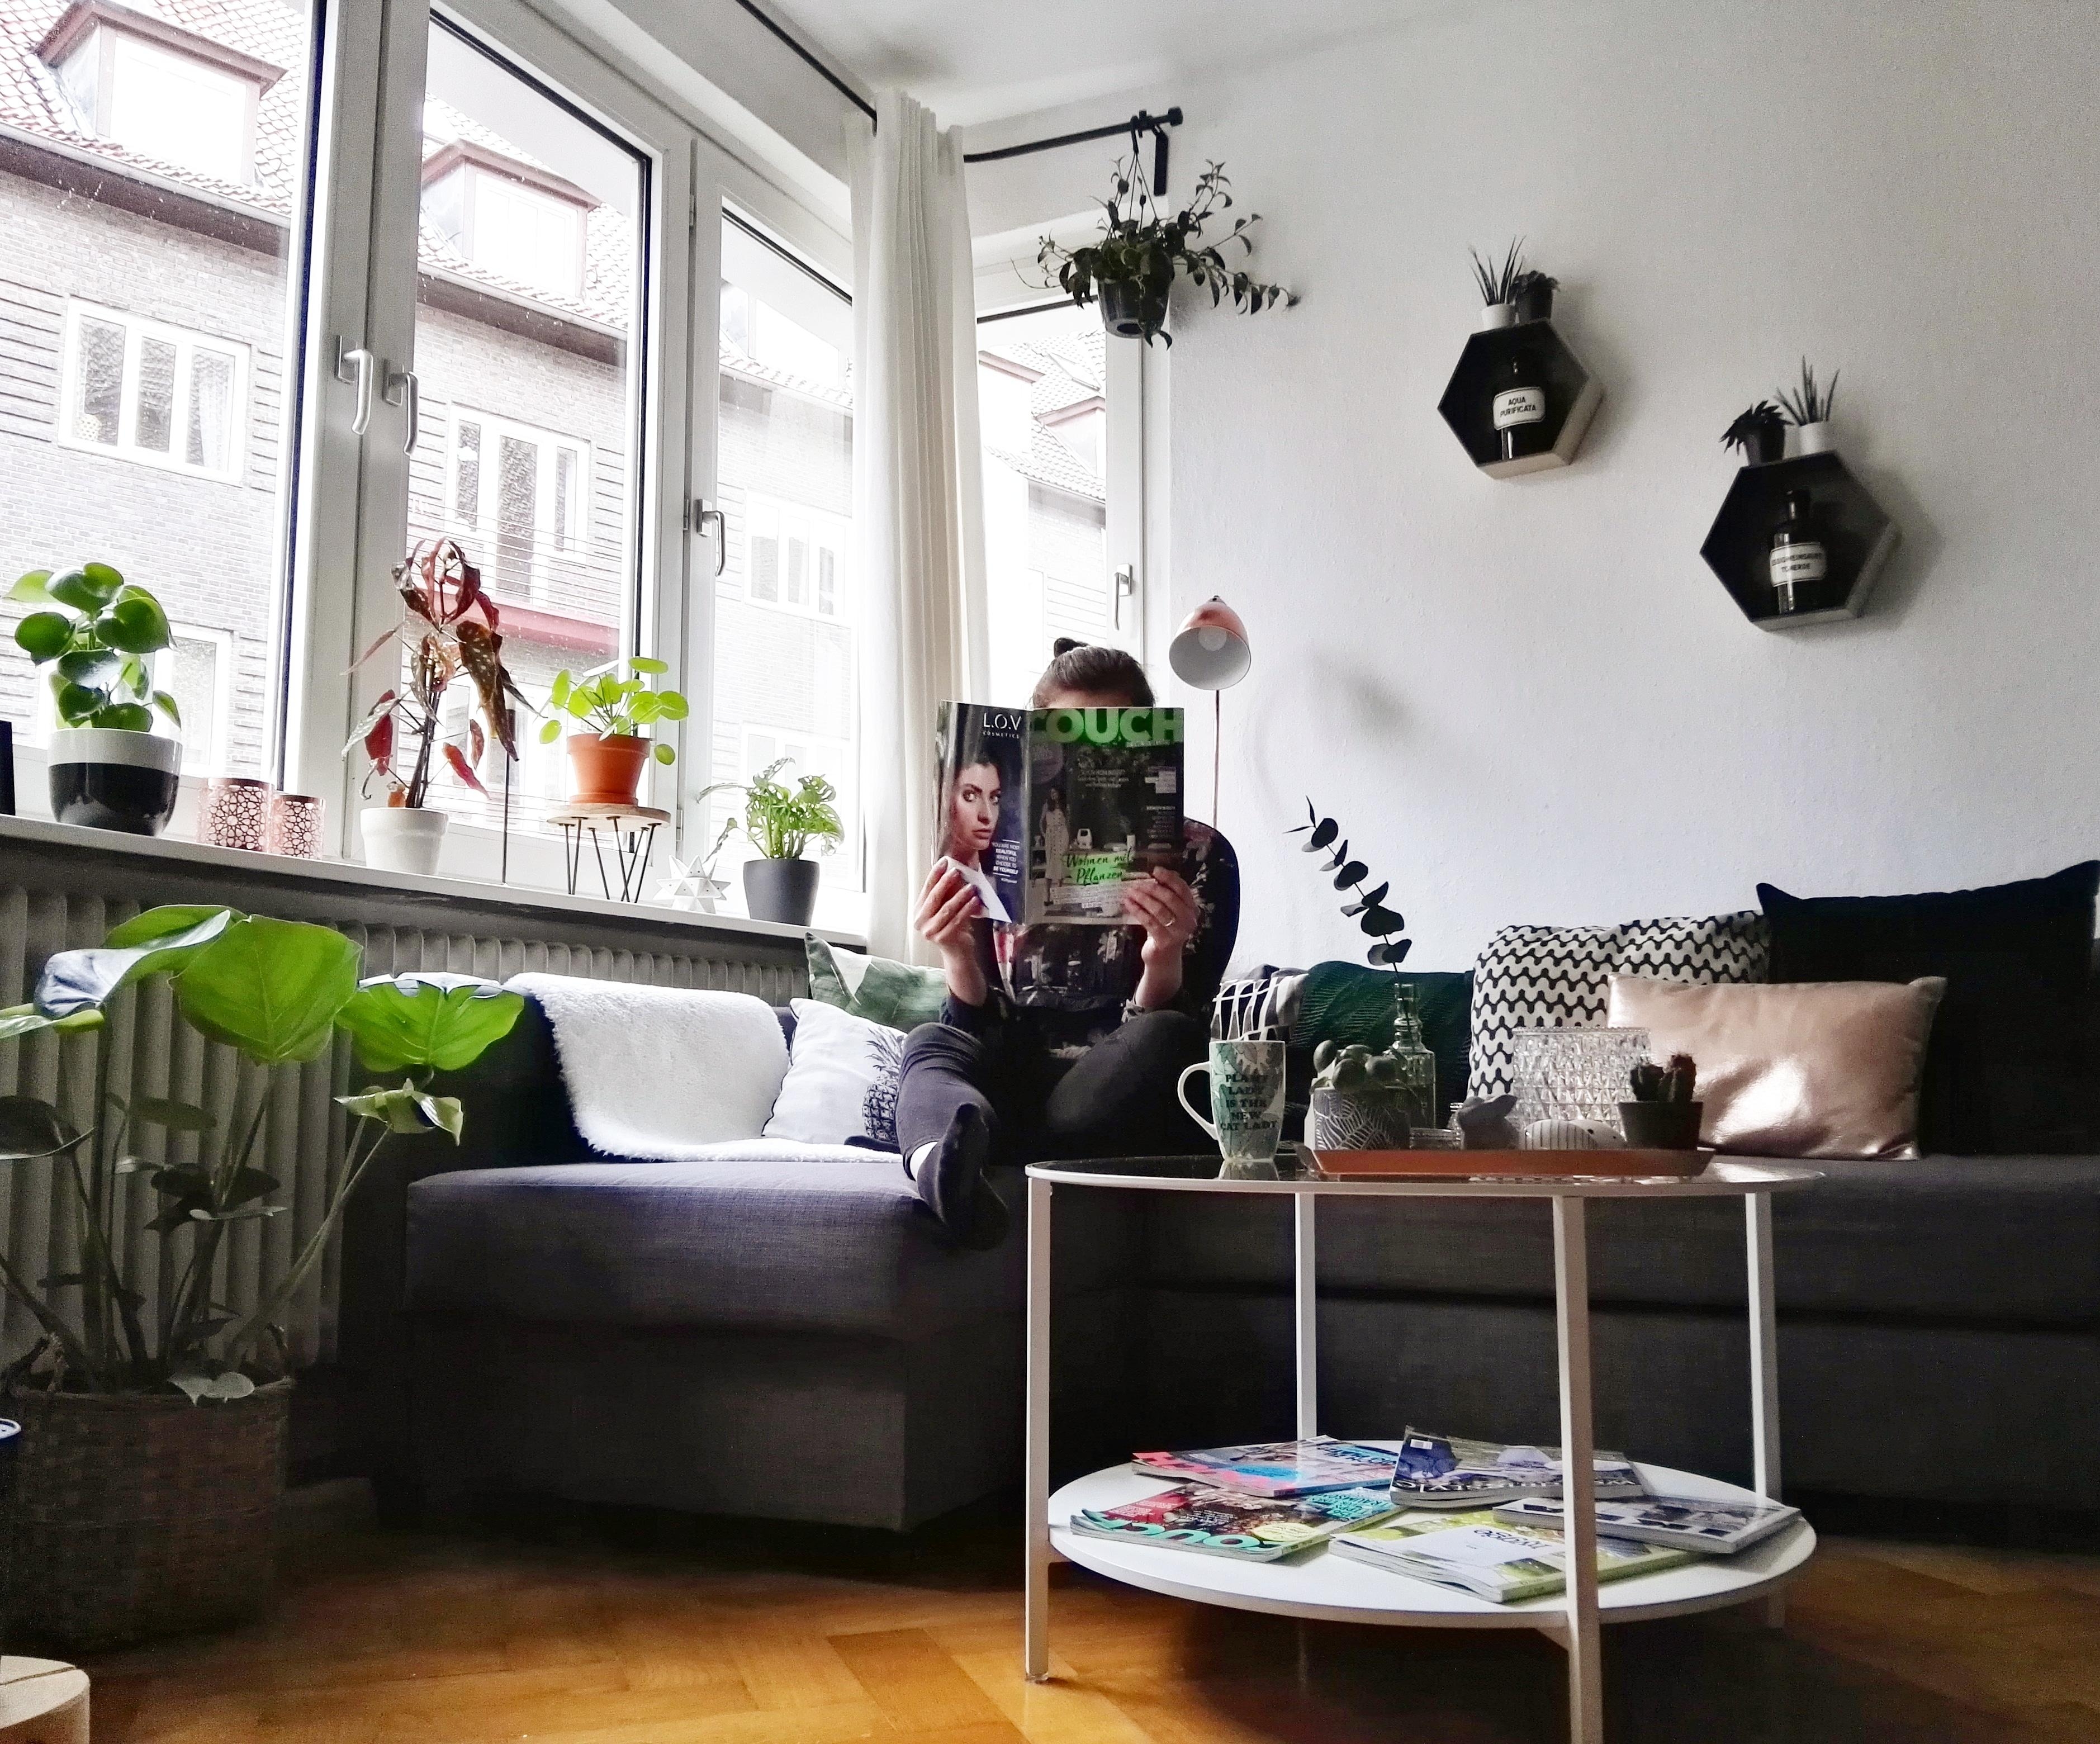 Mit der neuen Couch auf der Couch #couch #interior #livingroom #urbanjungle #plantlover #pflanzenliebe 